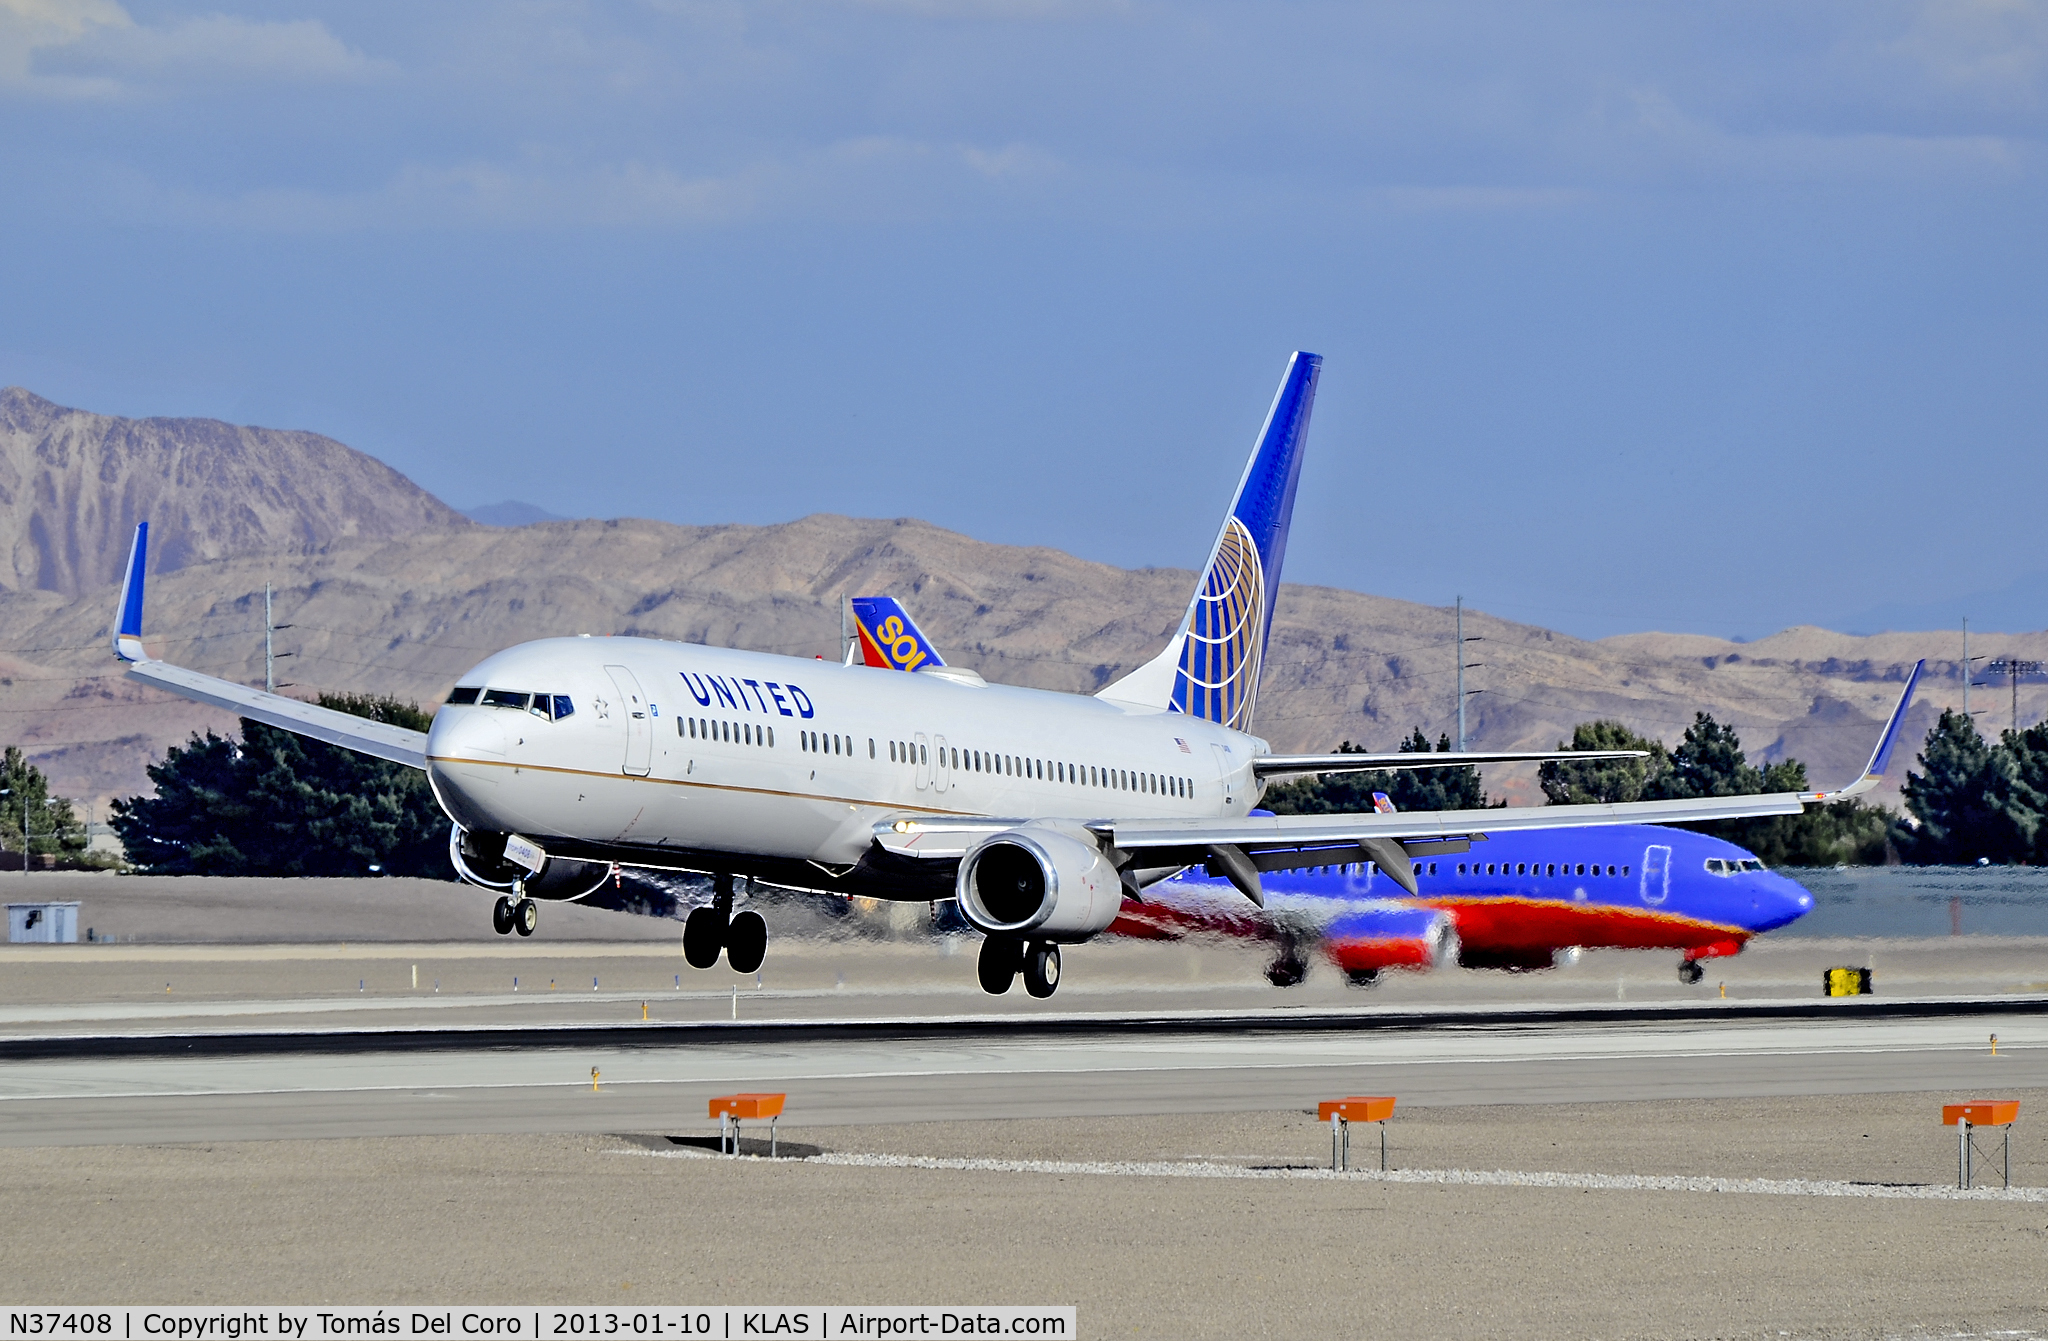 N37408, 2001 Boeing 737-924 C/N 30125, N37408 United Airlines 2001 Boeing 737-924 C/N 30125

- Las Vegas - McCarran International (LAS / KLAS)
USA - Nevada, January 10, 2013
Photo: Tomás Del Coro